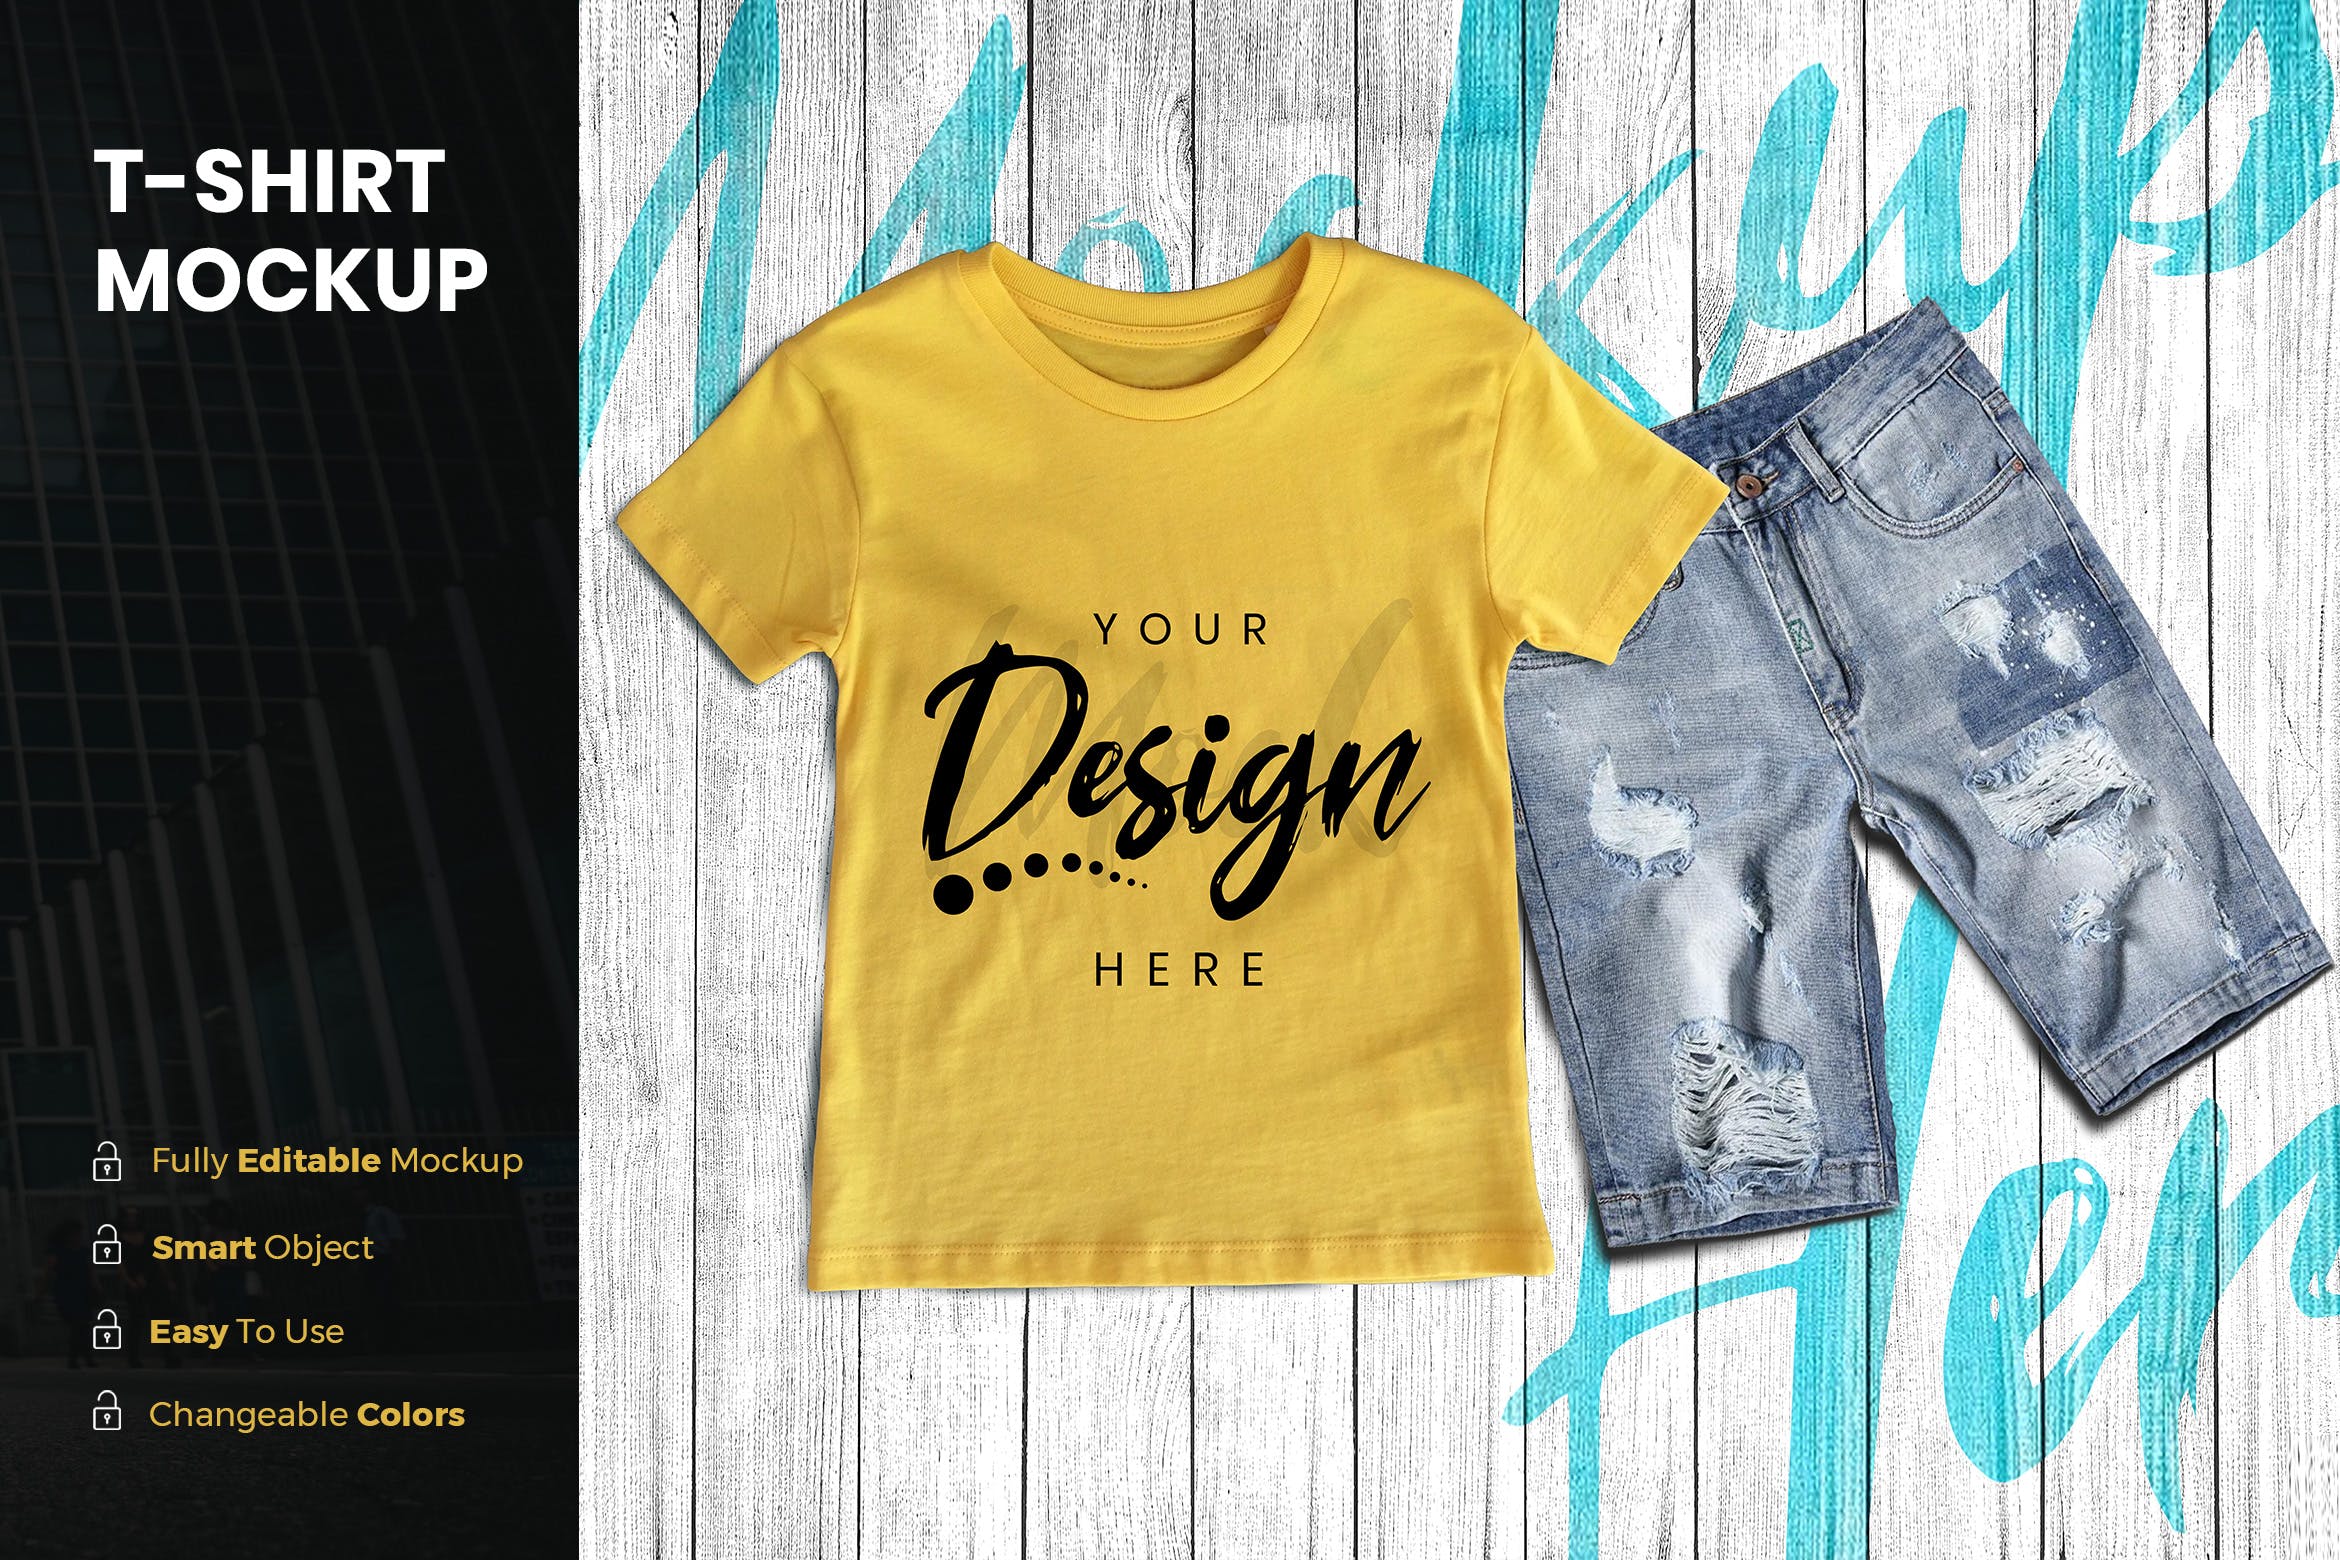 男童印花T恤图案设计预览样机非凡图库精选模板 TShirt Mockup插图